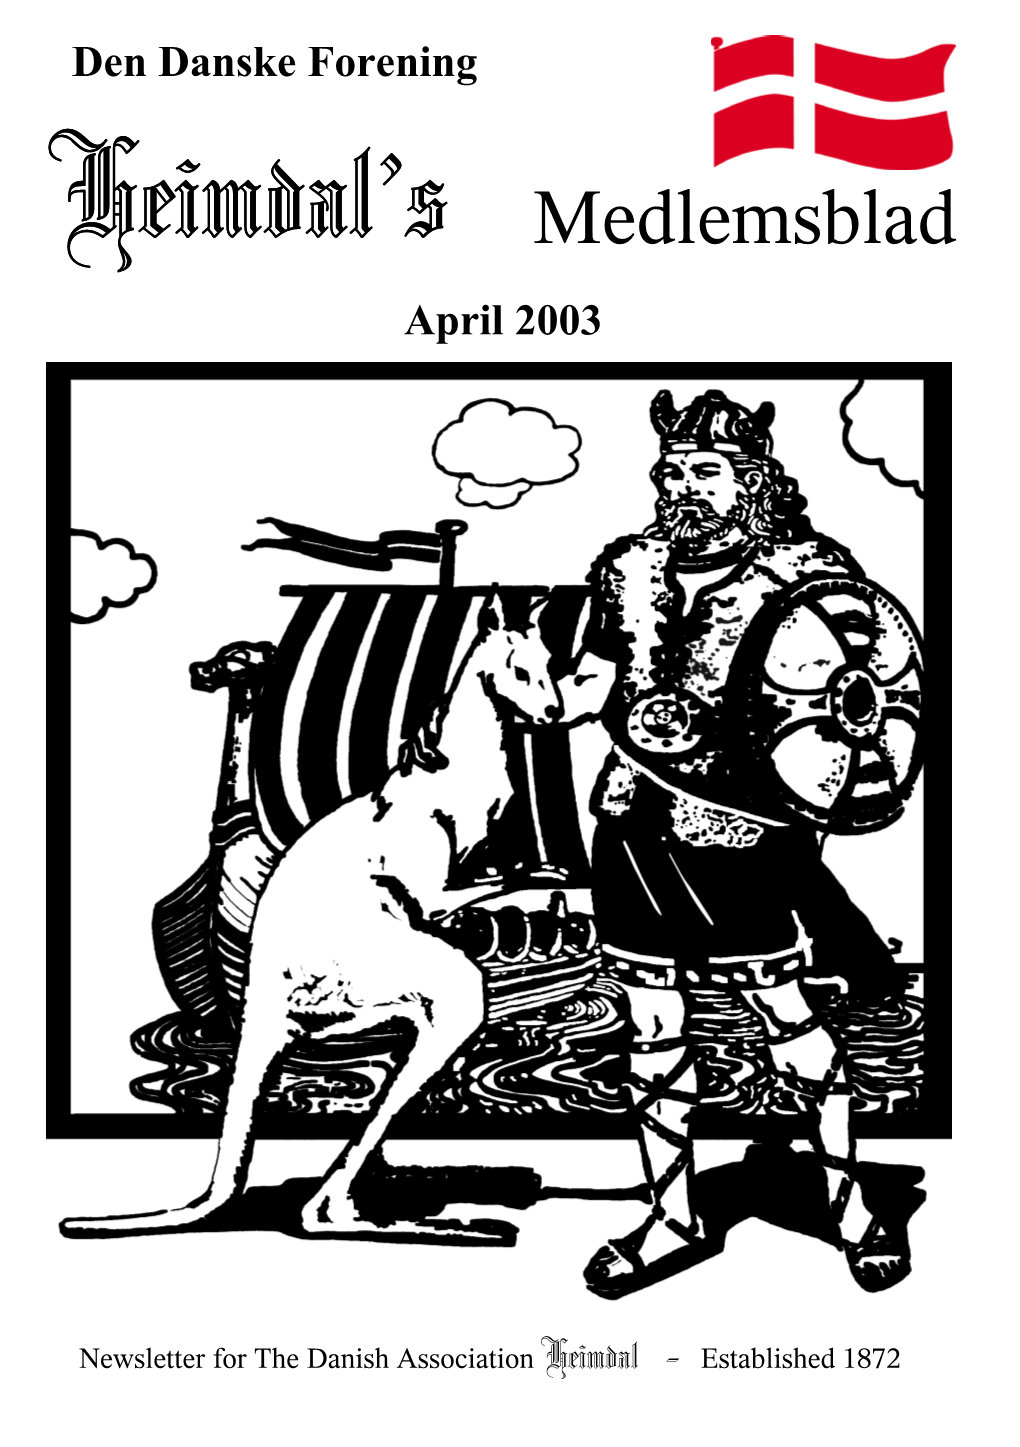 Den Danske Forening Heimdal’S Medlemsblad April 2003